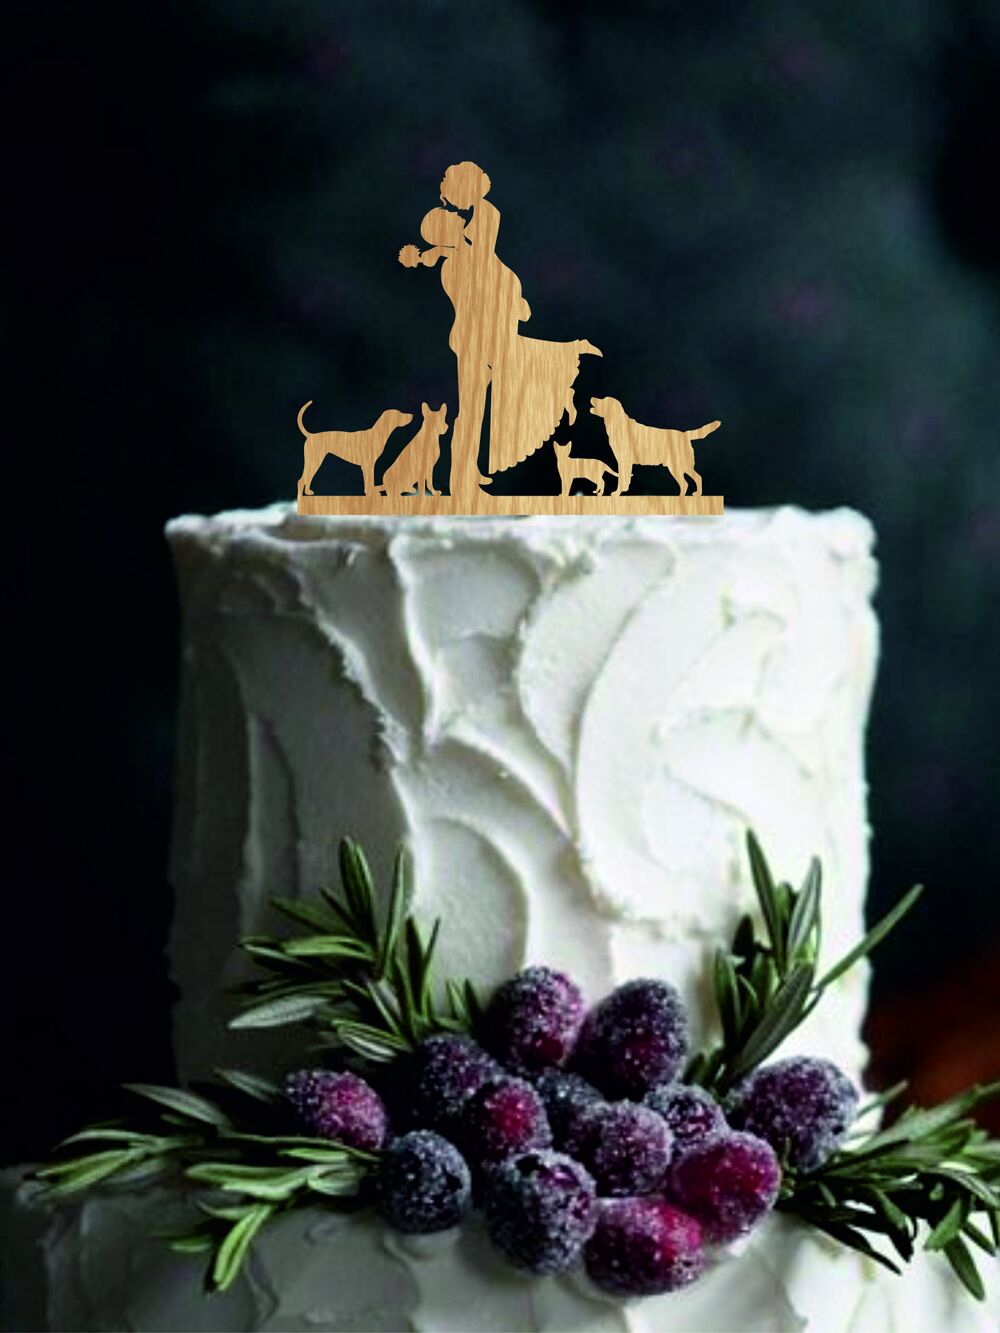 Custom silhouette wooden wedding cake topper